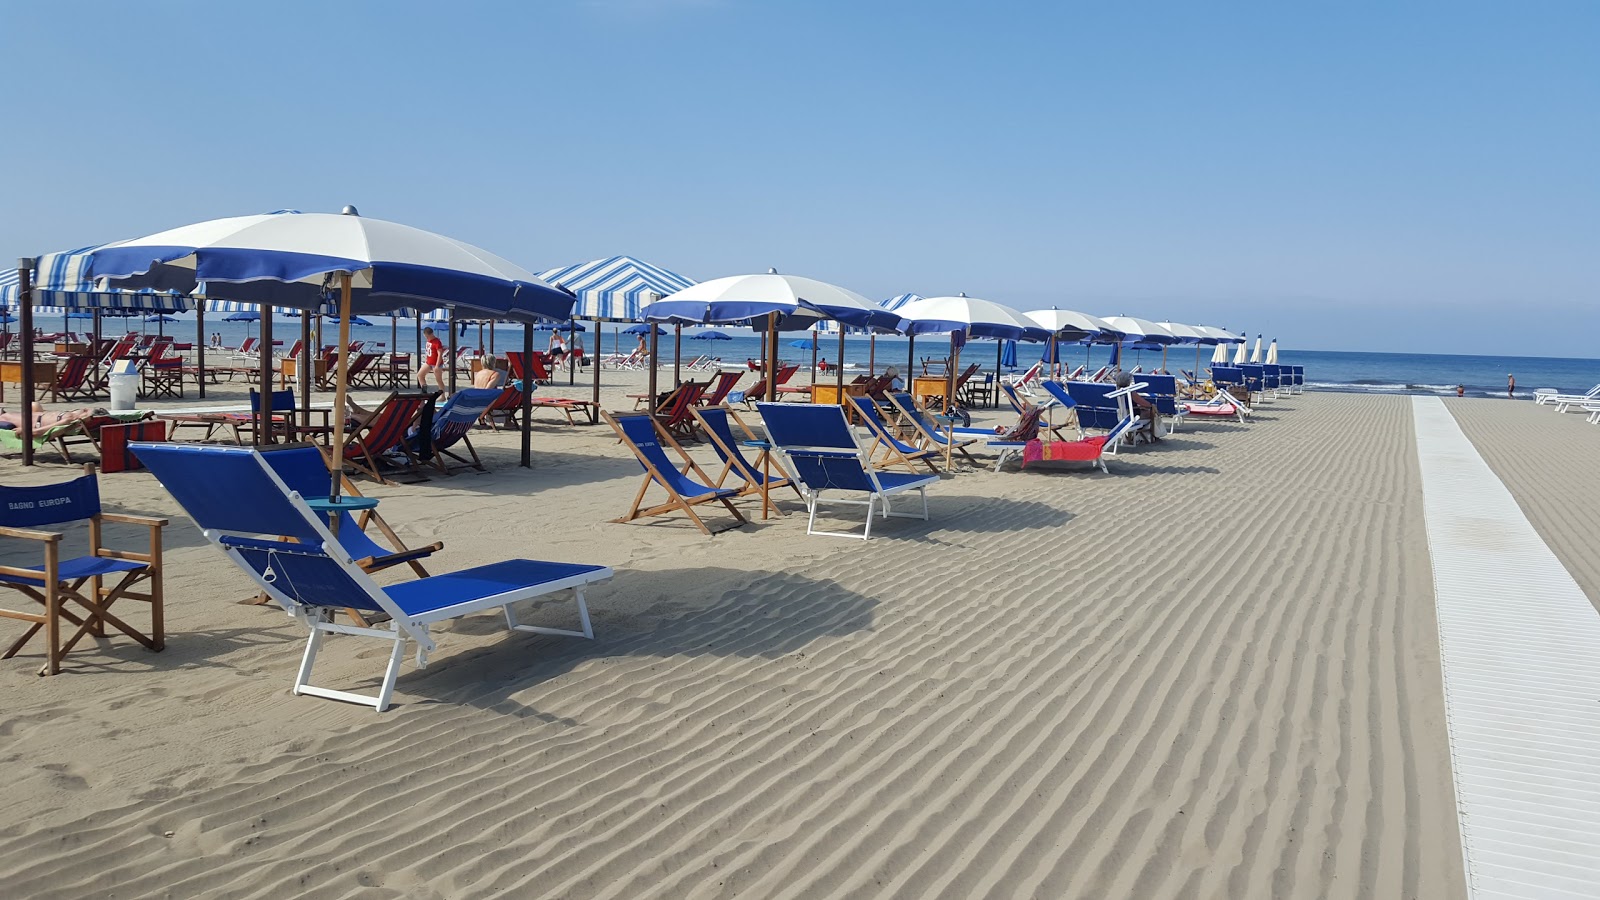 Φωτογραφία του Spiaggia Marina di Pietrasanta - δημοφιλές μέρος μεταξύ λάτρεις της χαλάρωσης